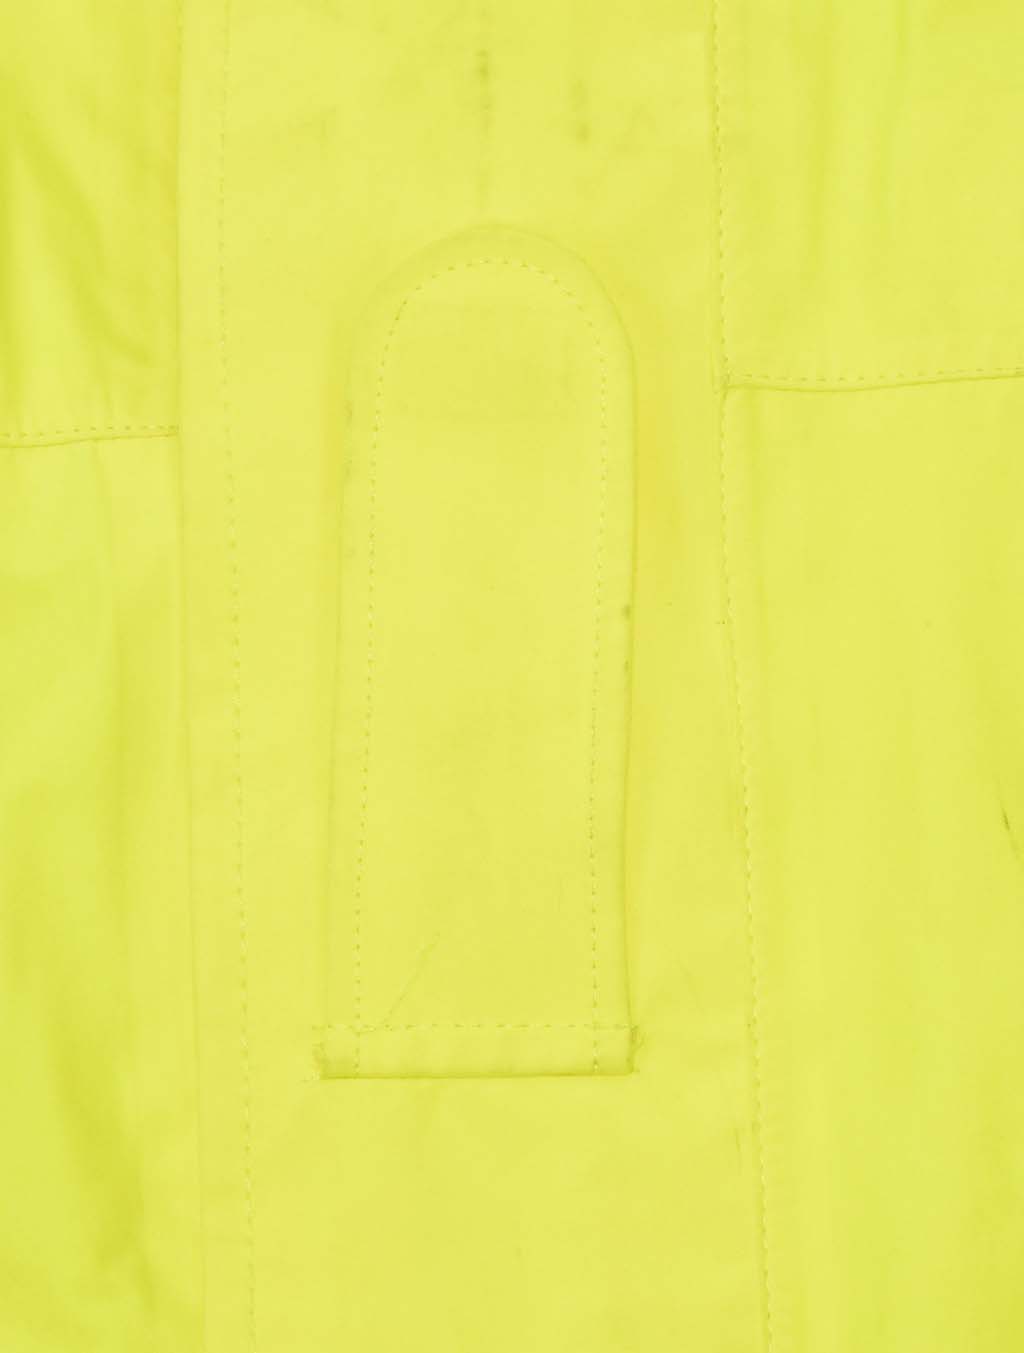 Куртка светоотражающая 2-х сторонняя yellow/black б/у Англия